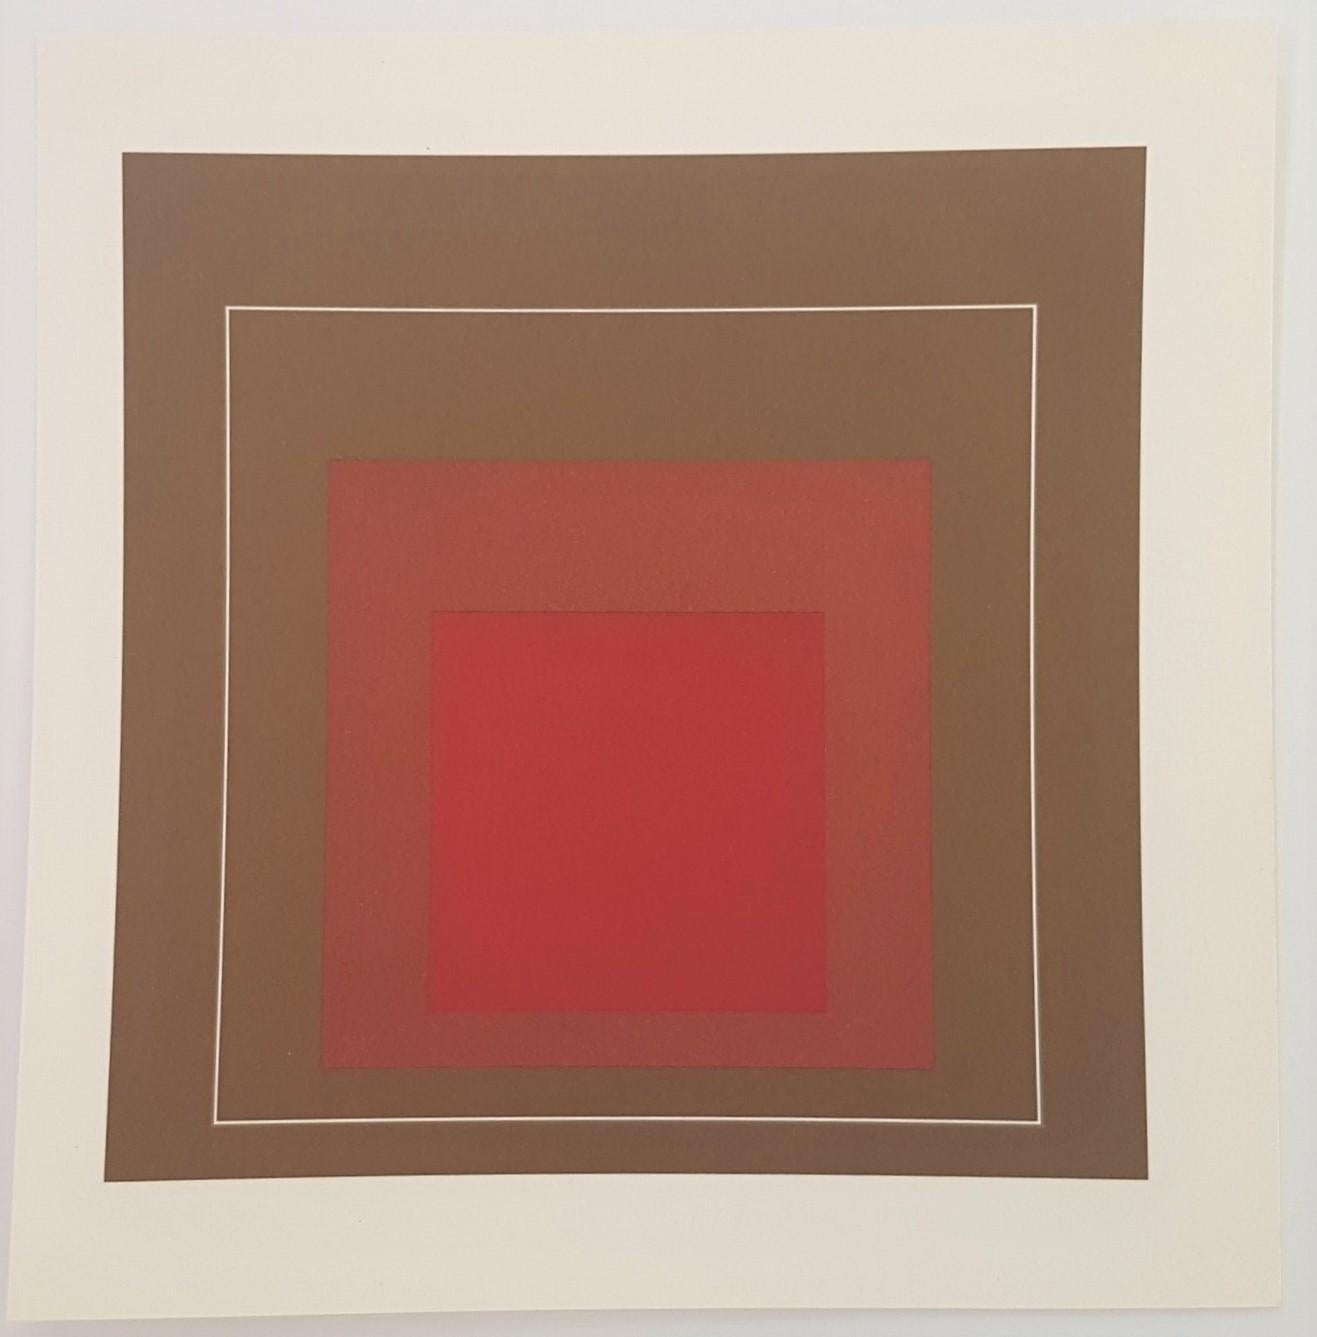 Quadrate mit weißen Linien (Bauhaus, Minimalist, Homage to the Square, Albers) – Print von (after) Josef Albers